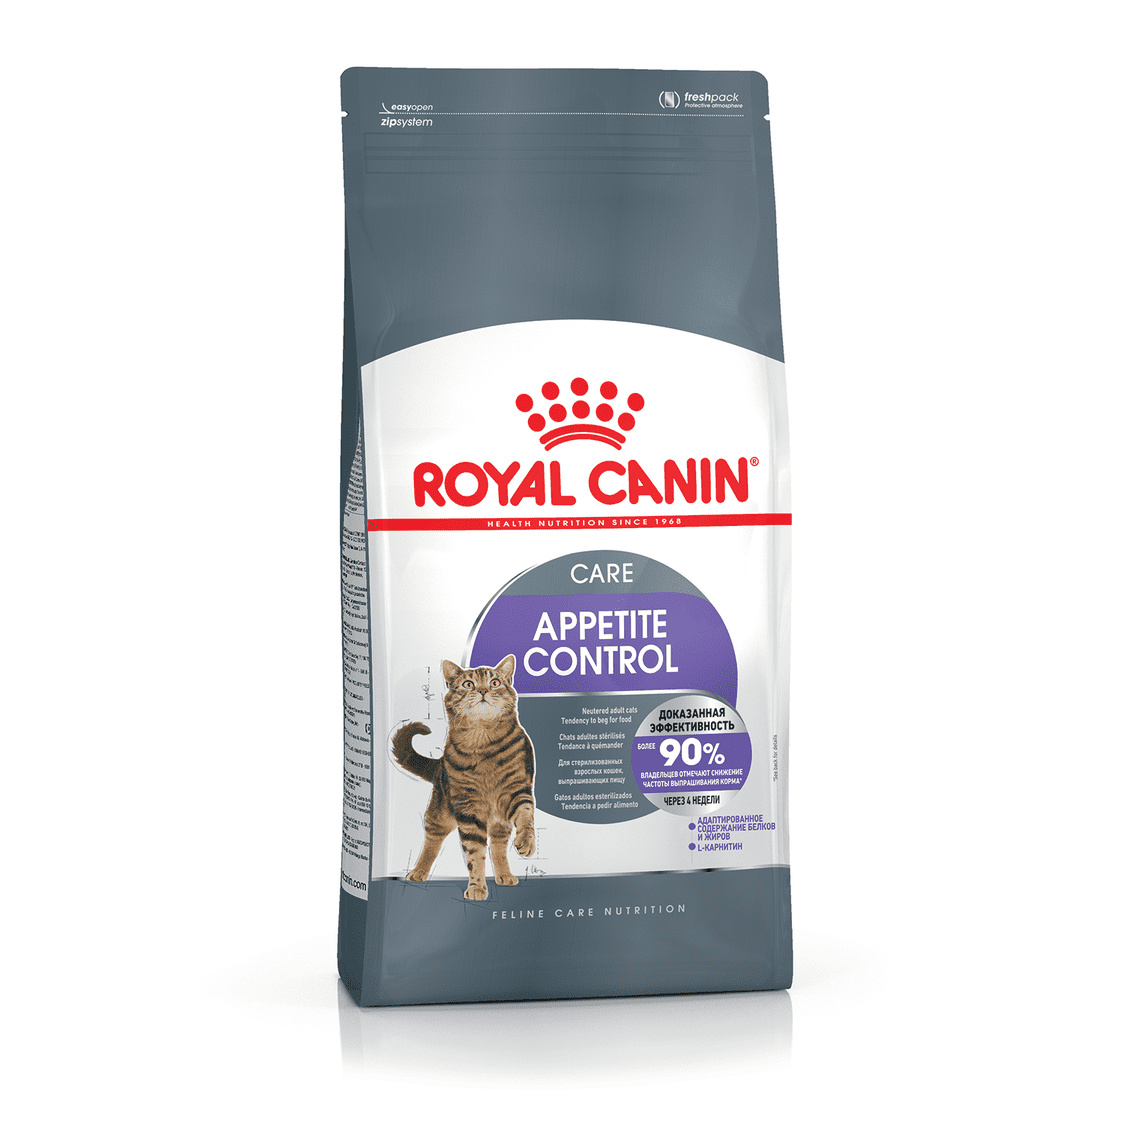 Royal Canin Корм Royal Canin для взрослых кошек, рекомендуется для контроля выпрашивания корма (2 кг) 44792